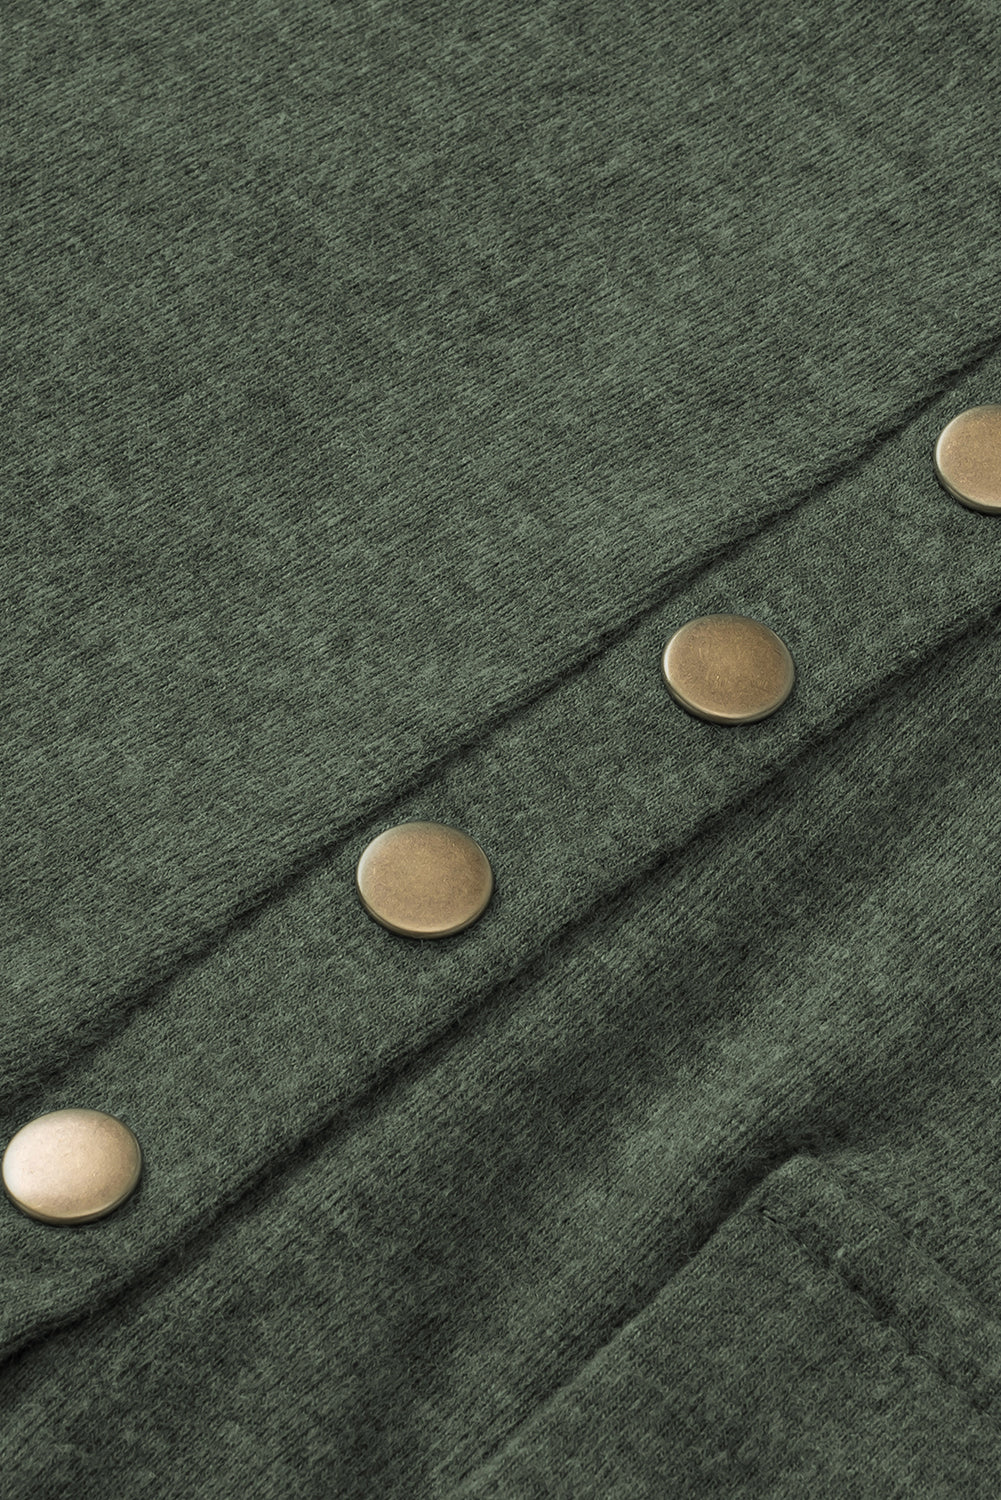 Majica s dugmadima i dugmadima velike veličine, magličasto zelena